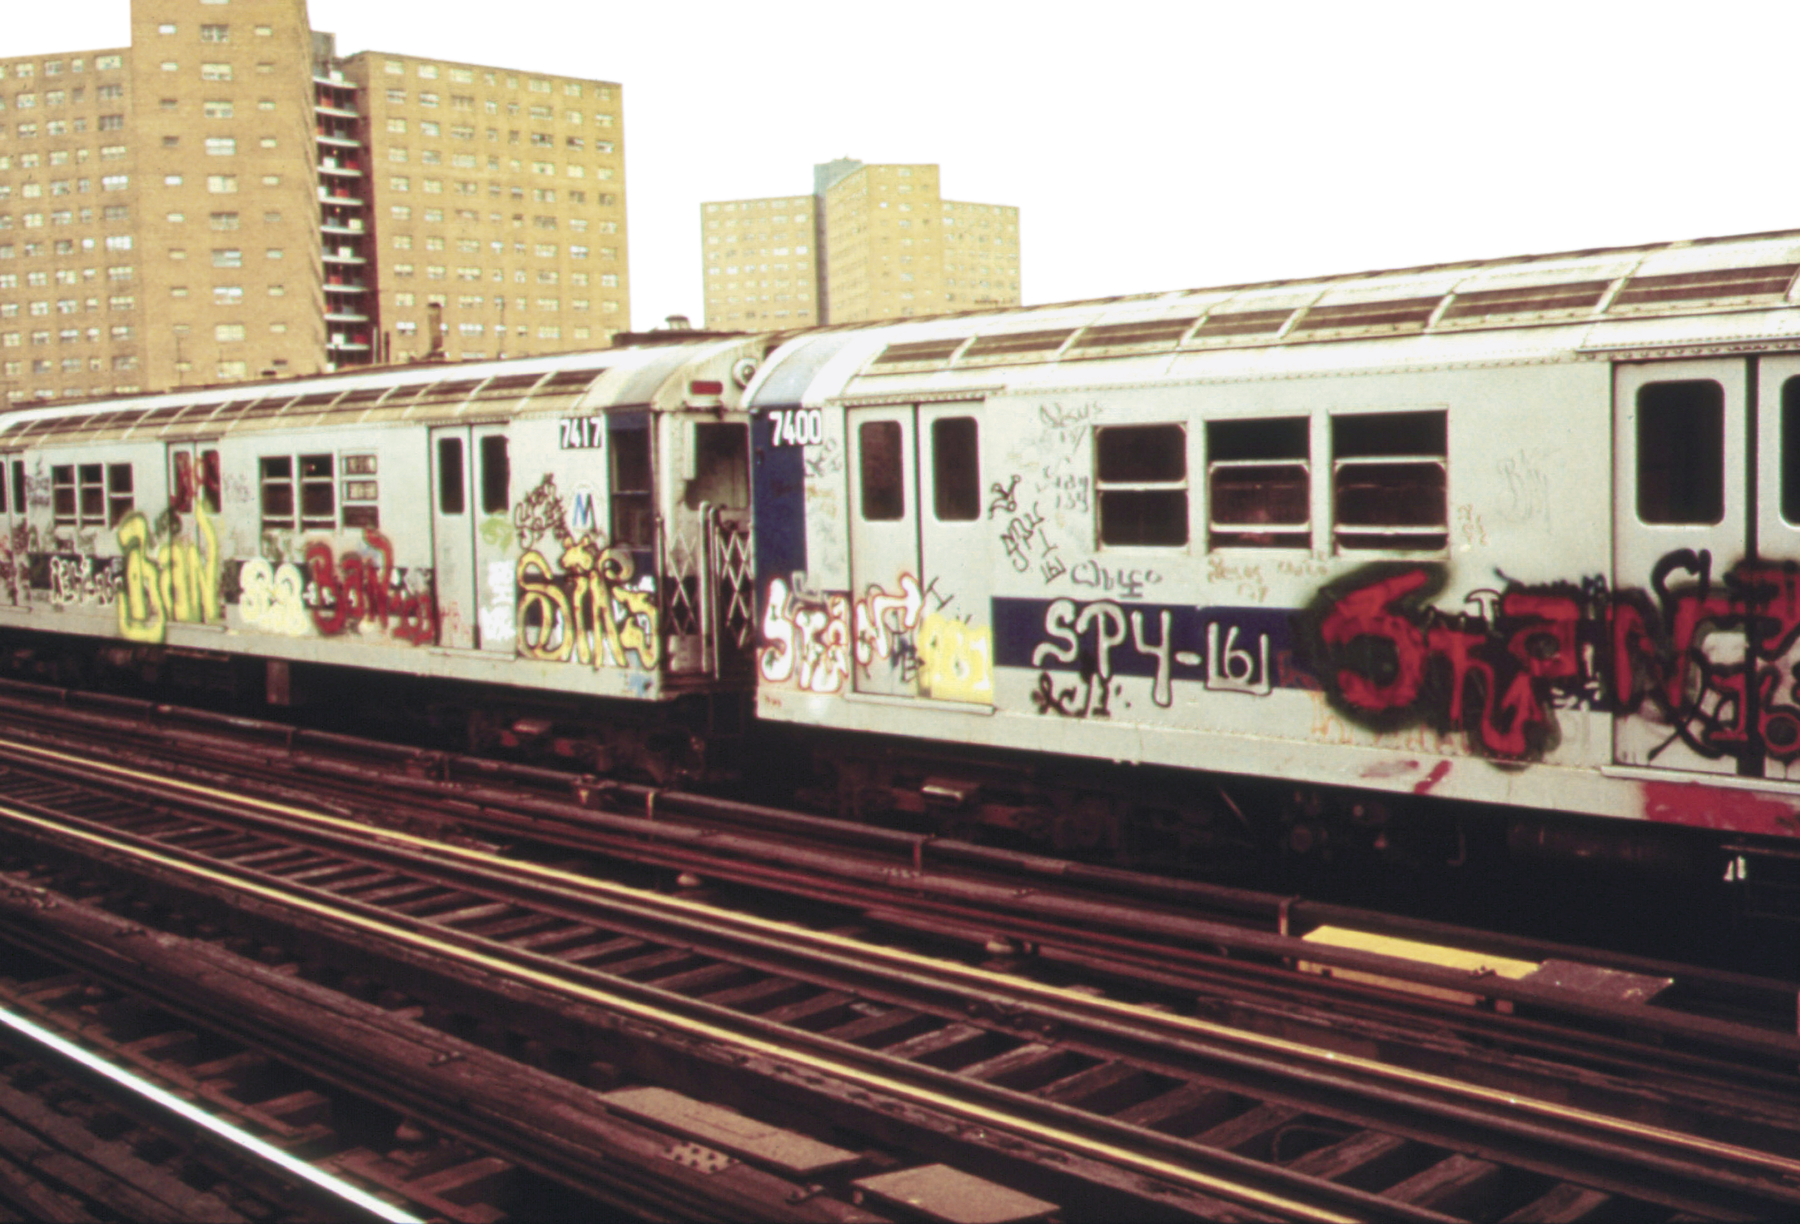 Fotografia. Vista de dois vagões de um metrô com grafite na parte externa.